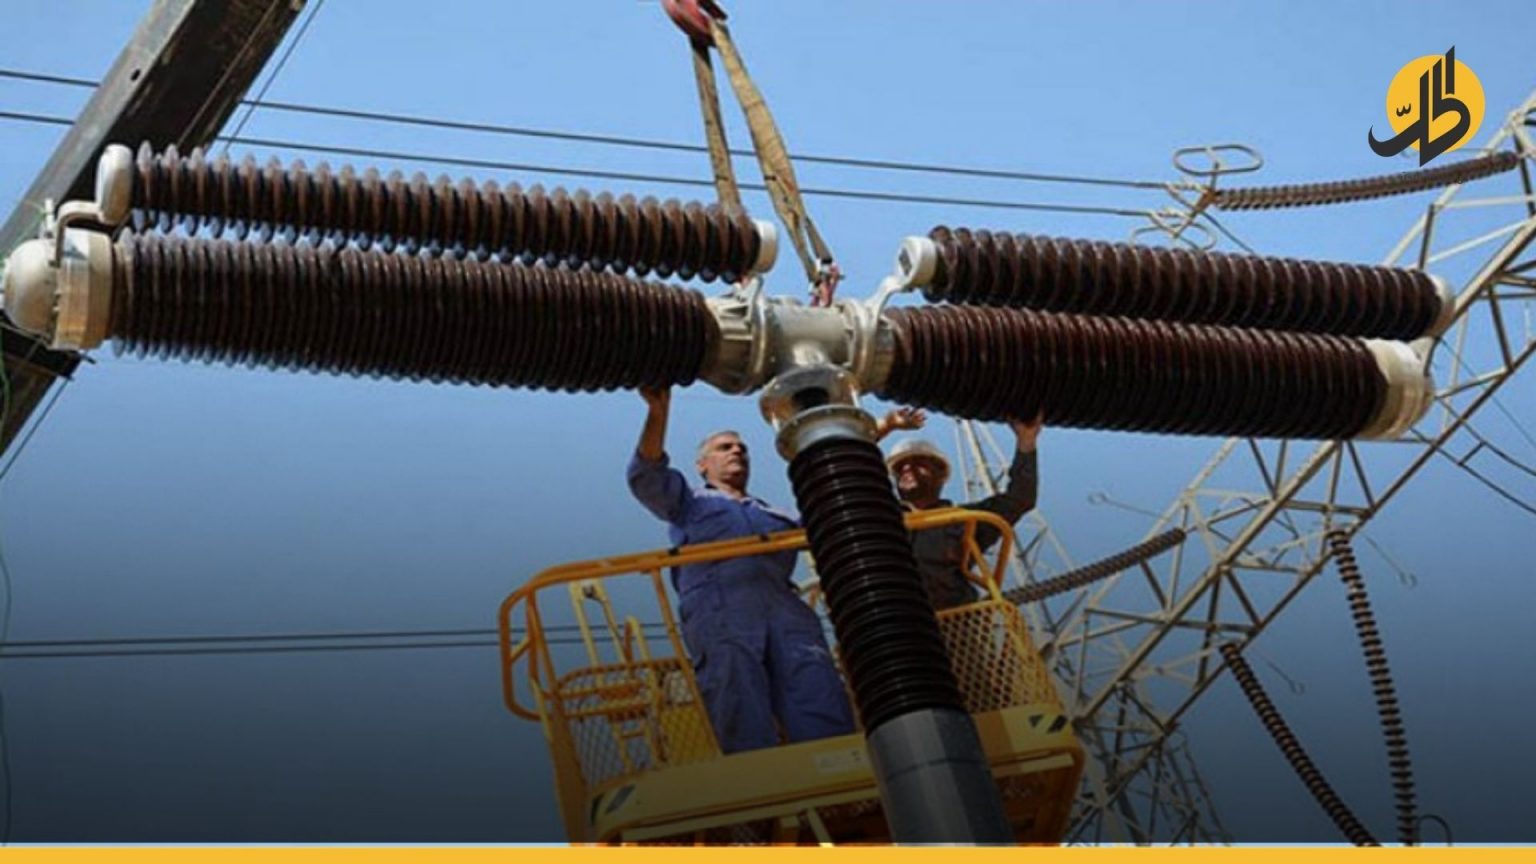 وزارة الكهرباء العراقية تُحدد موعد بلوغها مرحلة “الاكتفاء الذاتي”